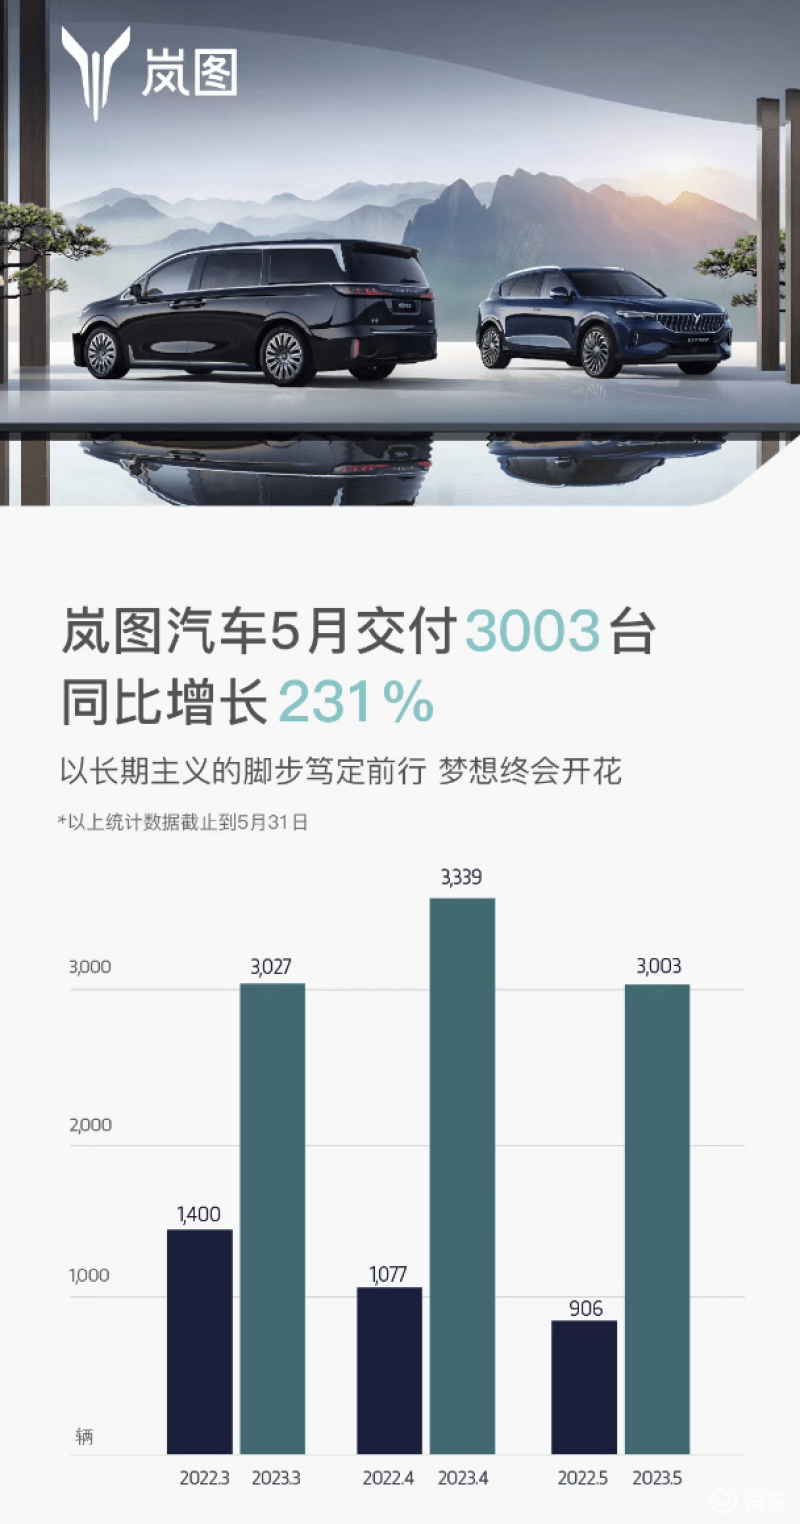 岚图汽车5月交付3003辆 实现连续三个月销量超过3000辆